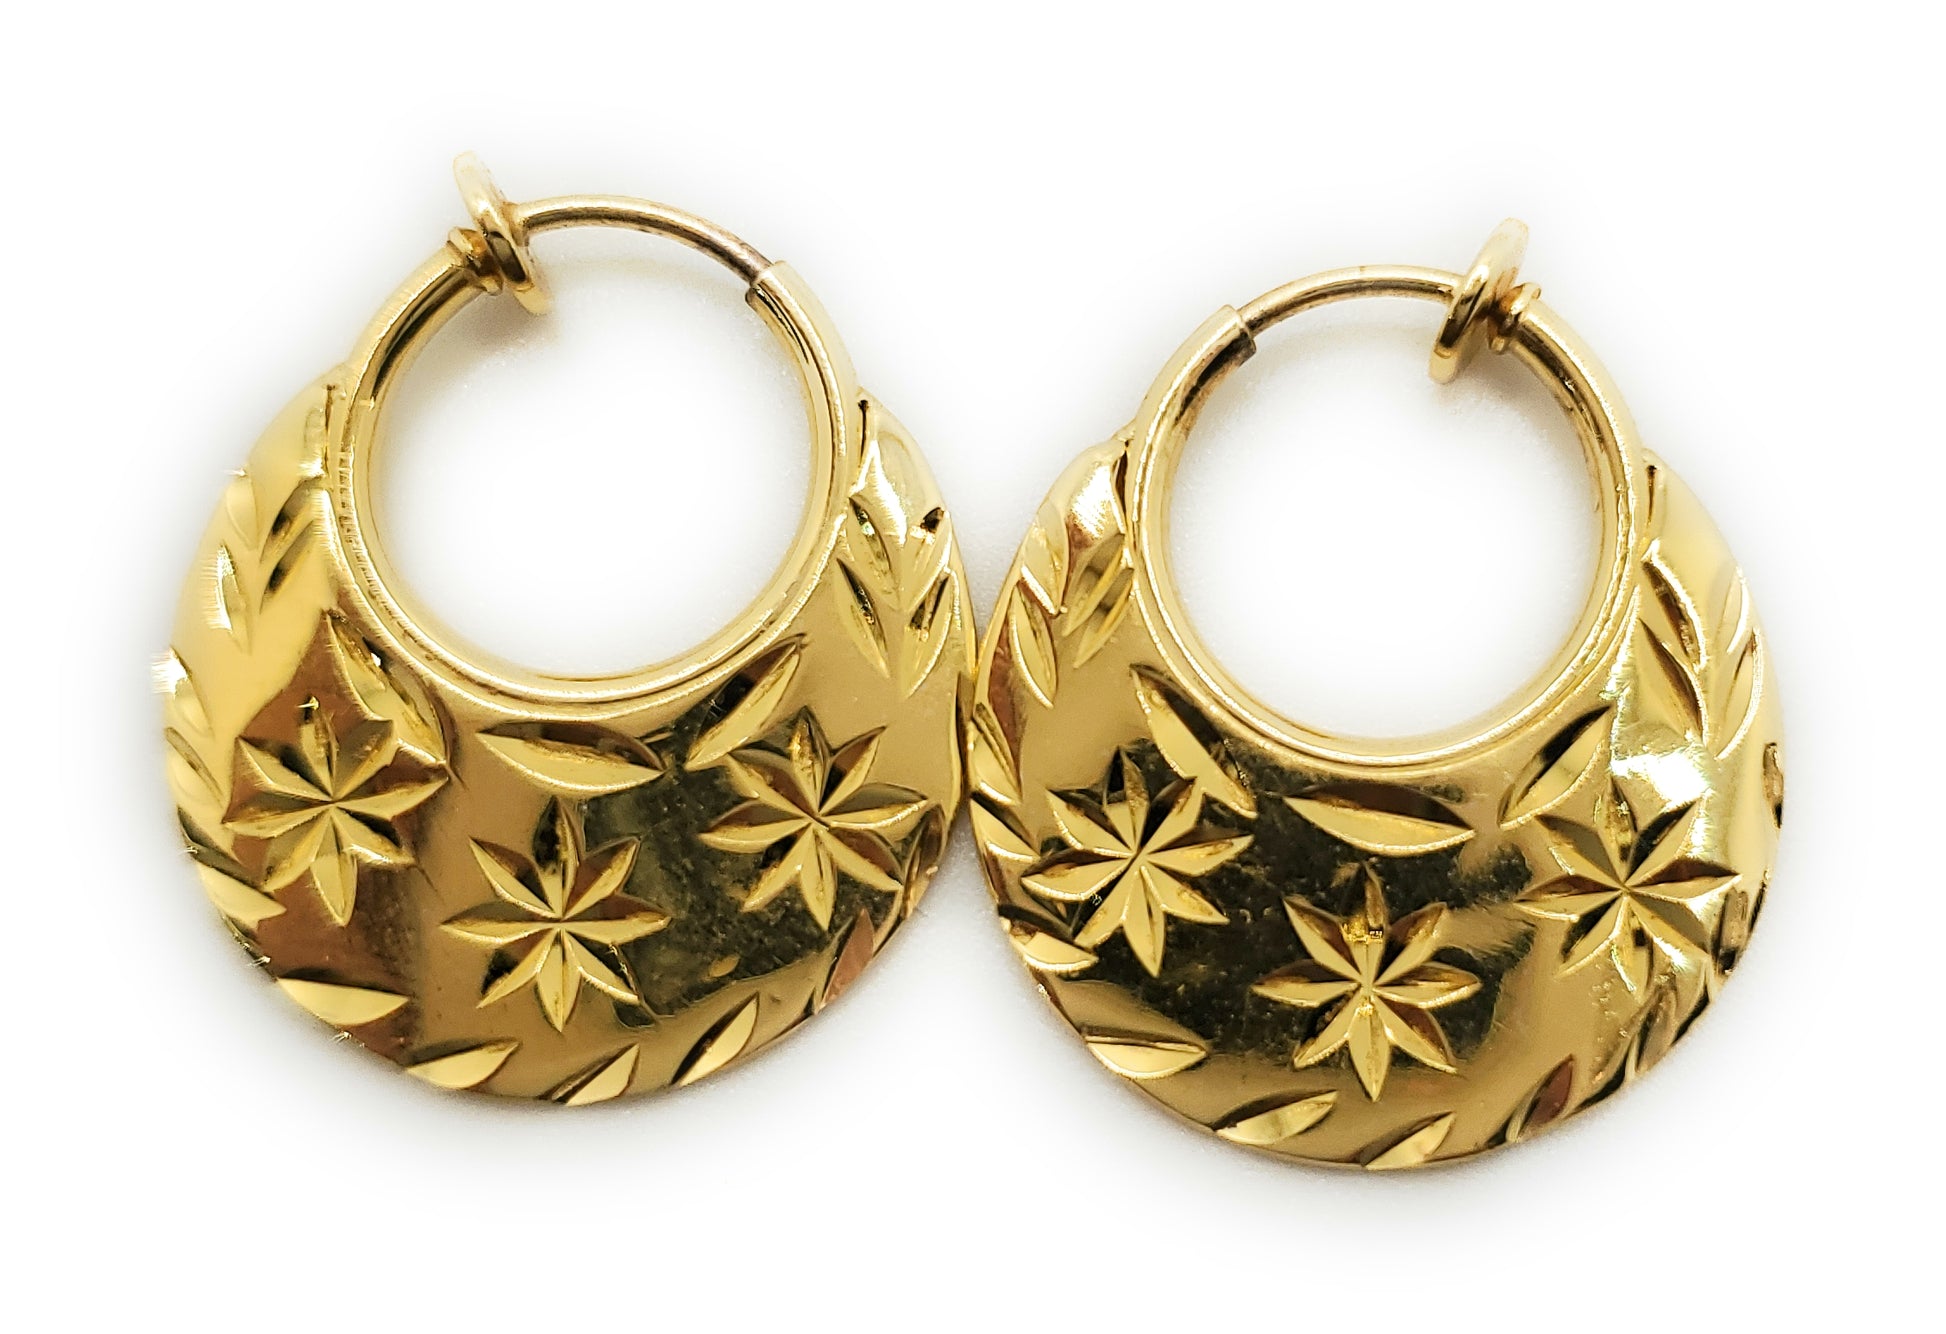 Buy Men's Hoop Earrings, Electric Gold Hoop Earrings, Gold Hoop Earrings,  Large Hoop Earrings for Men, Gold Plated Hoop Earrings, E190SY Online in  India - Etsy | Mens earrings hoop, Men earrings,